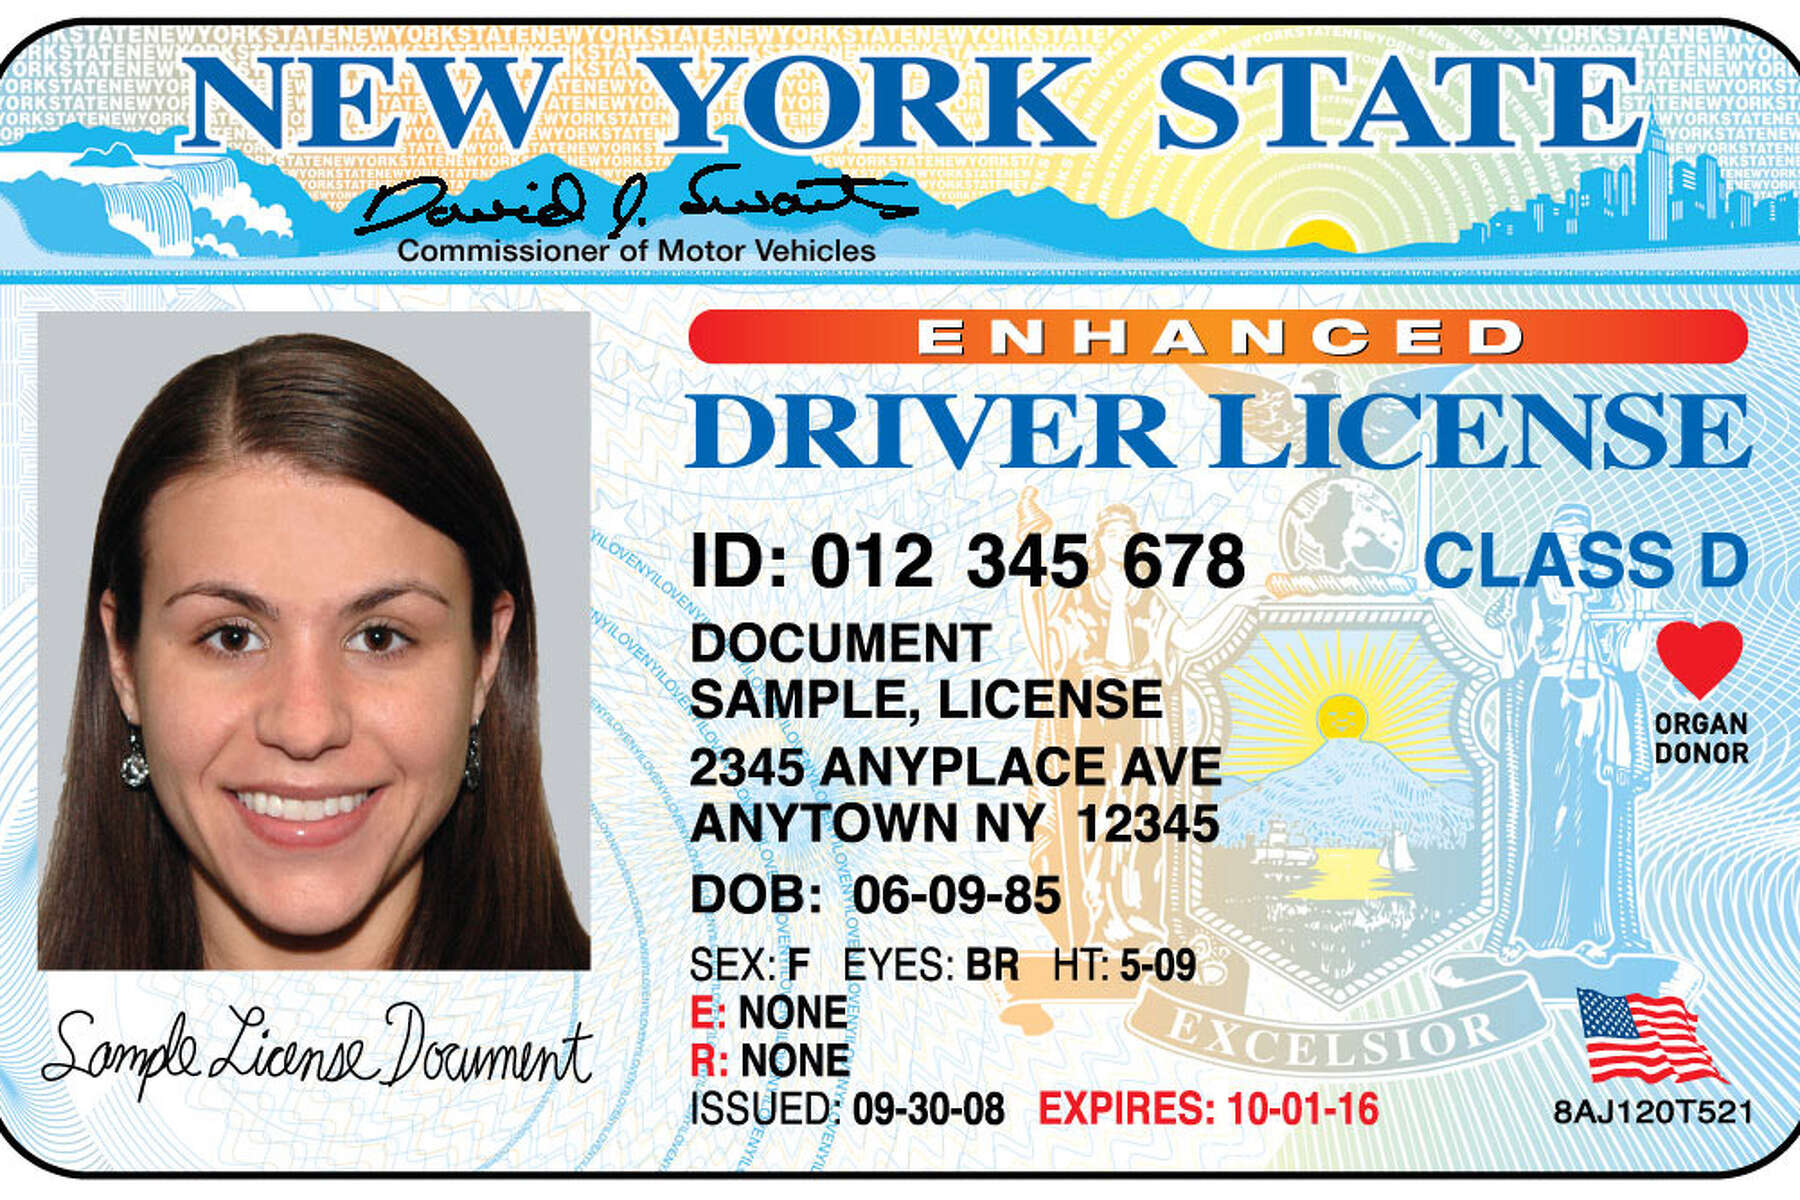 renew license ny online